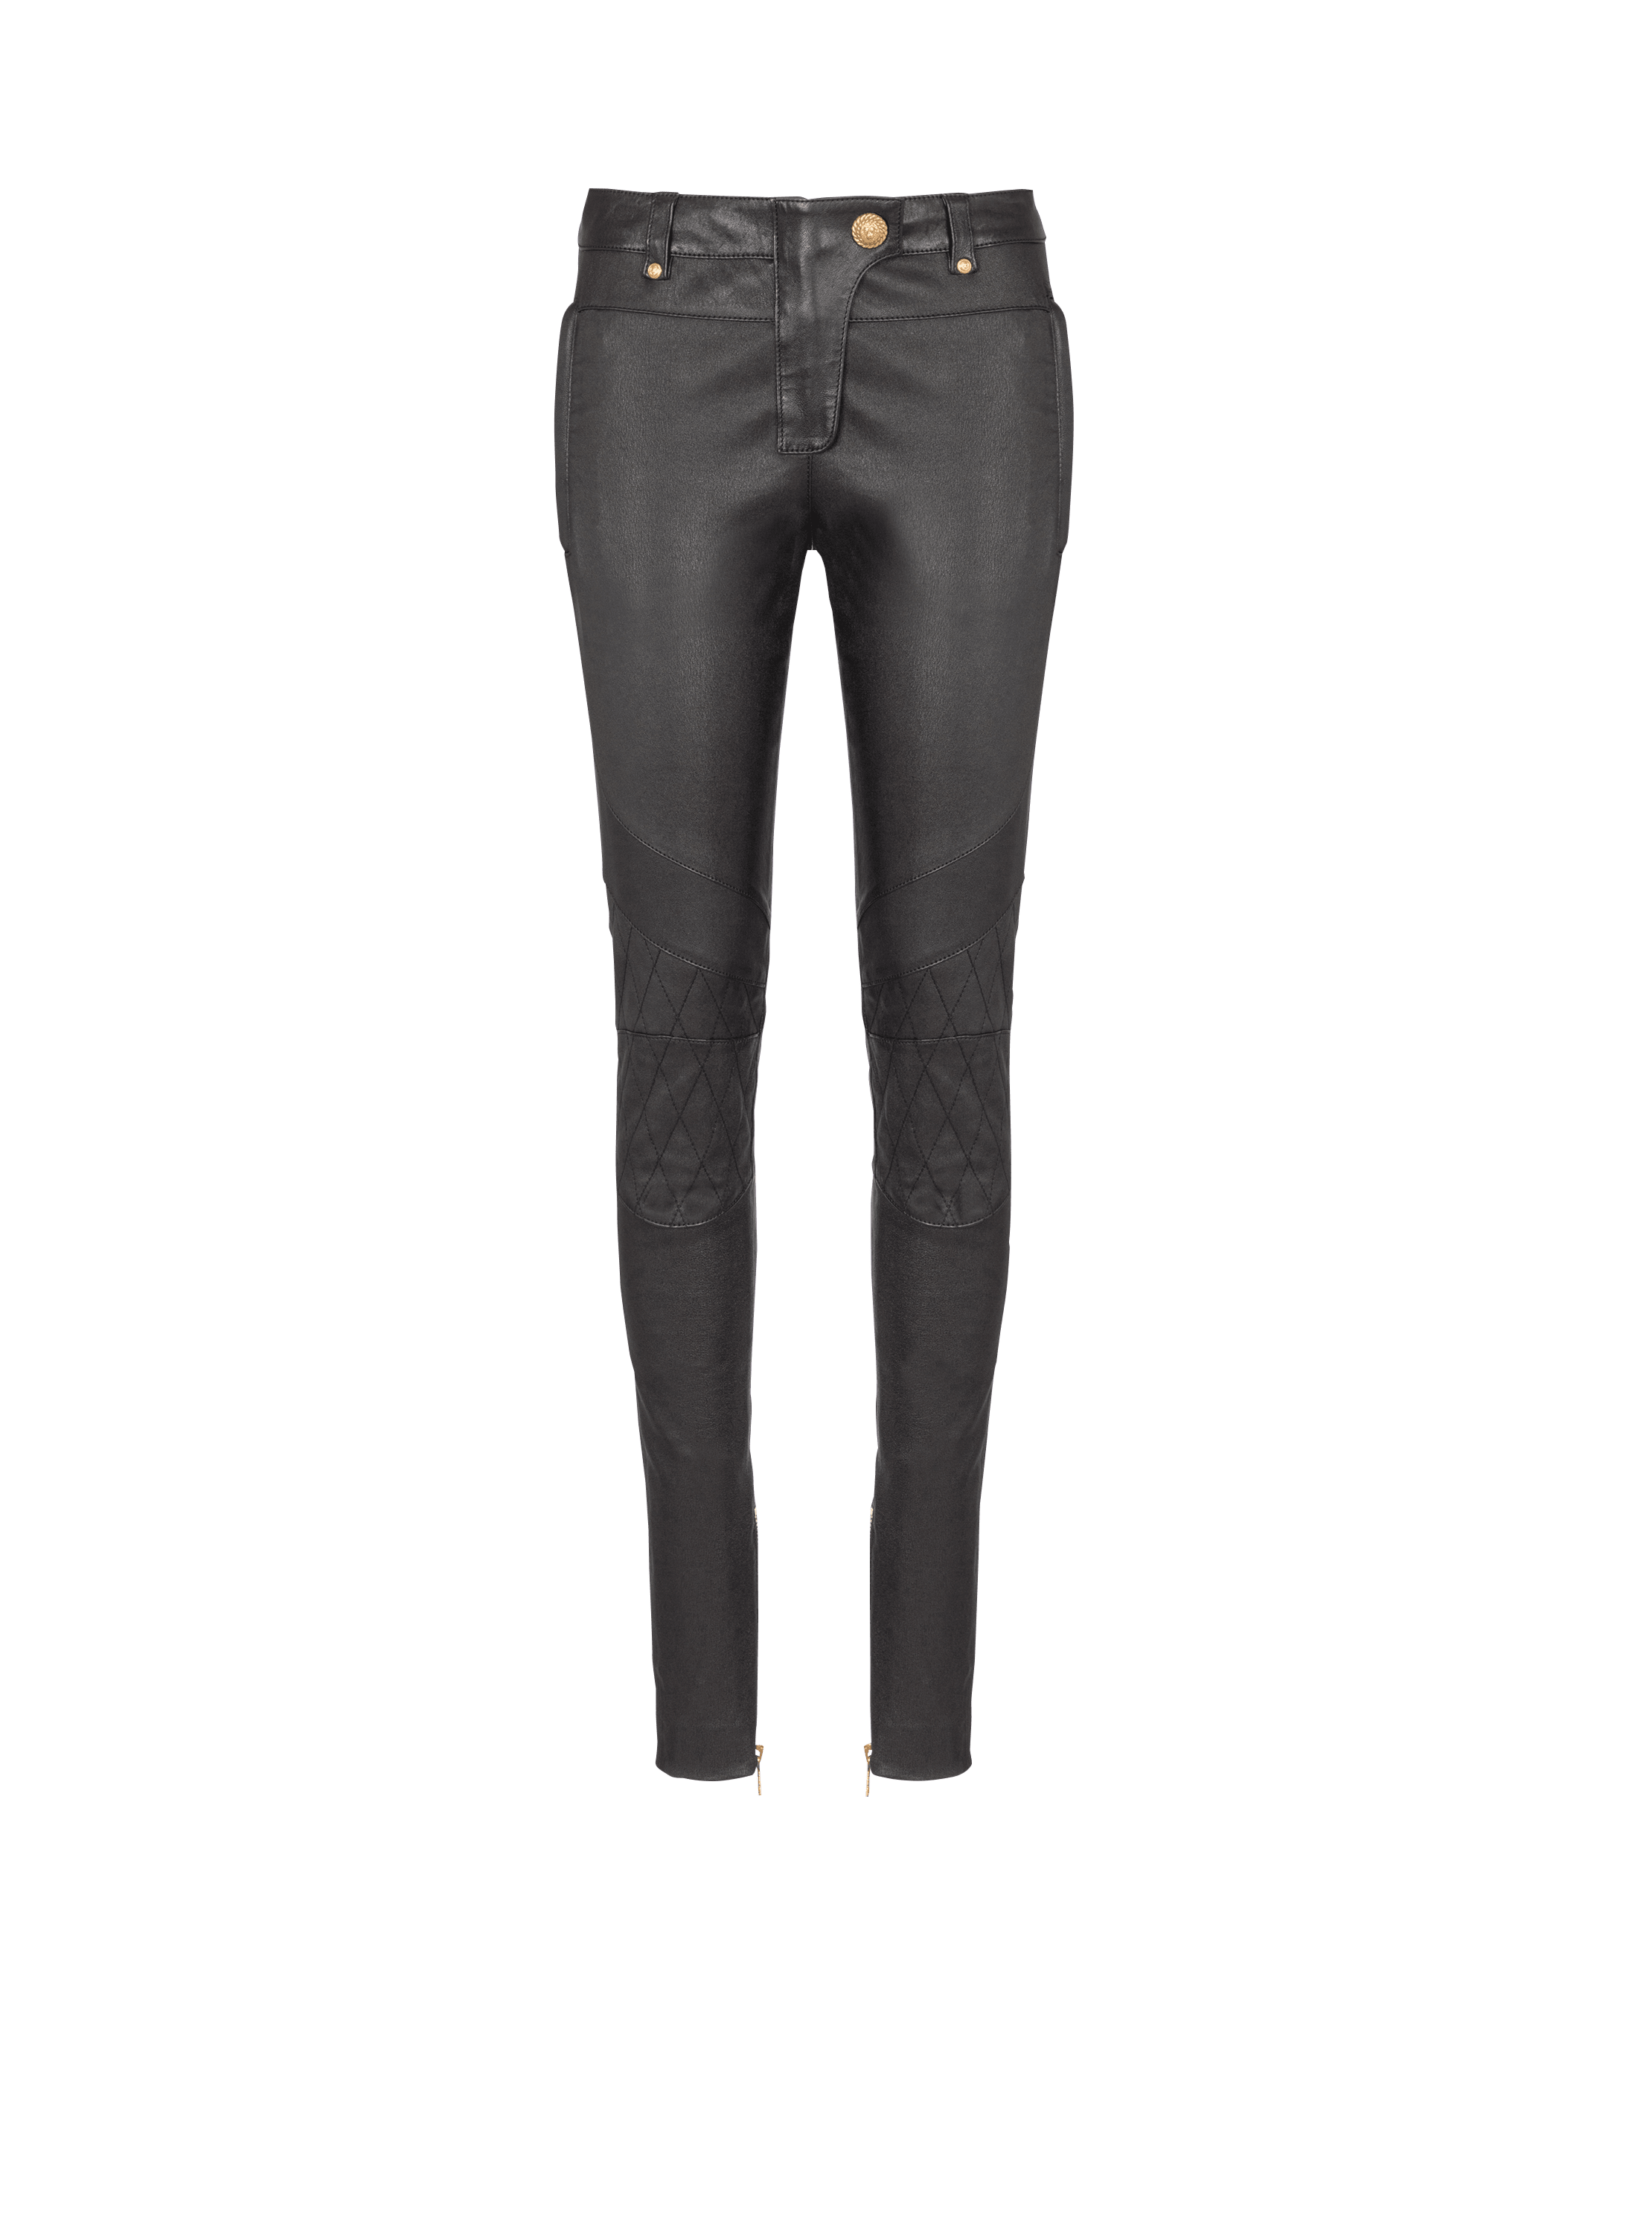 Low-rise leather skinny pants in black - Balmain